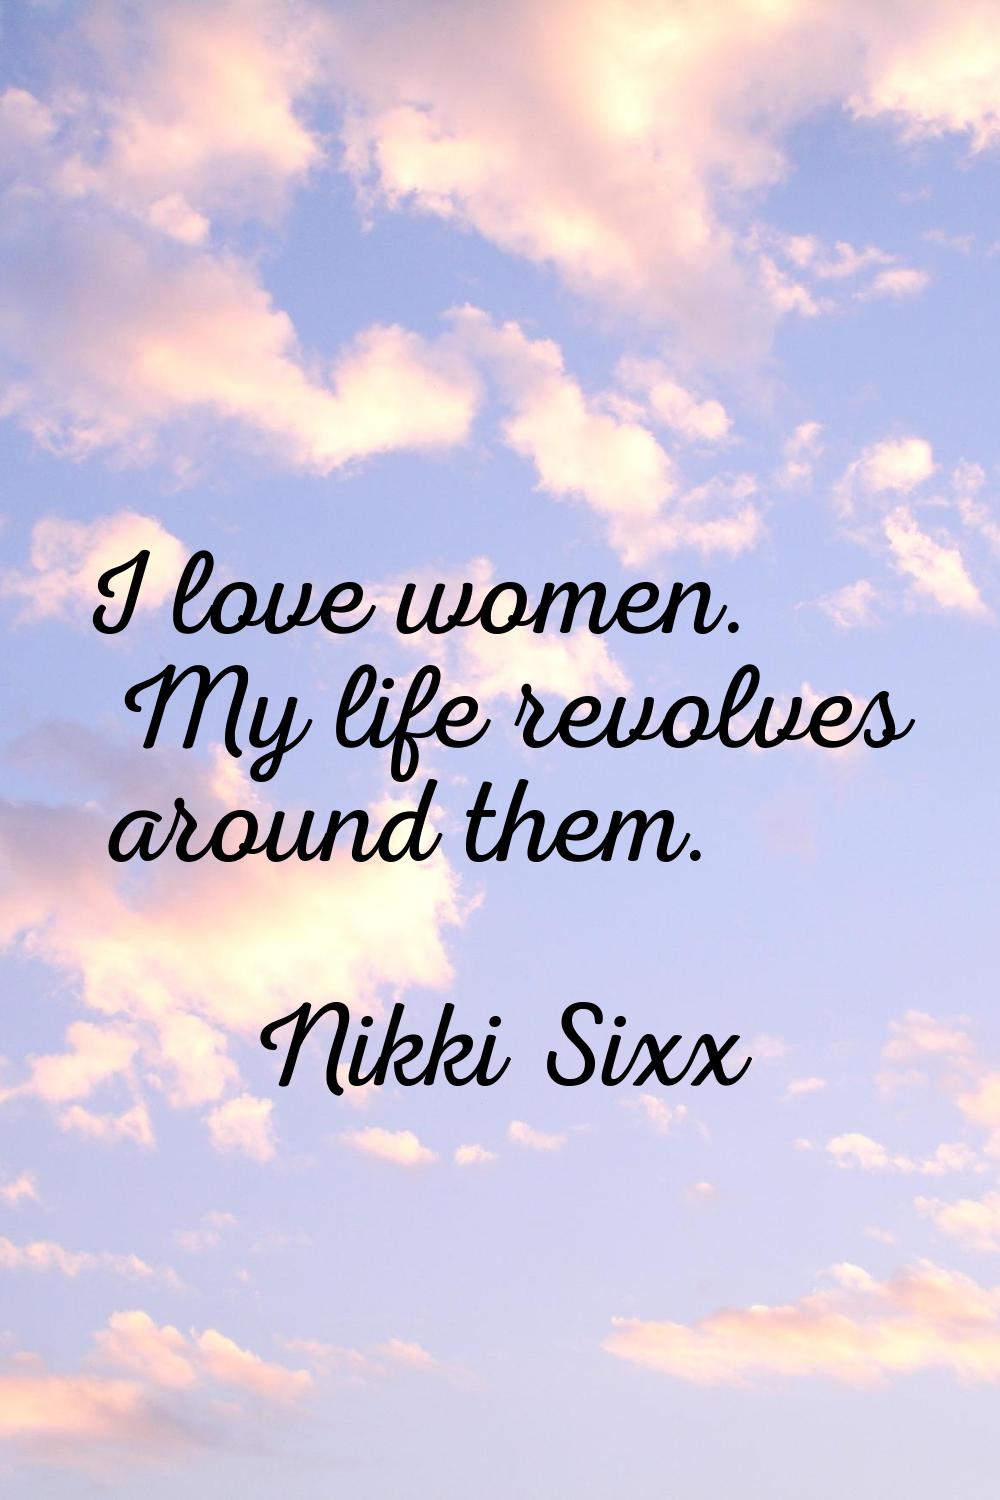 I love women. My life revolves around them.